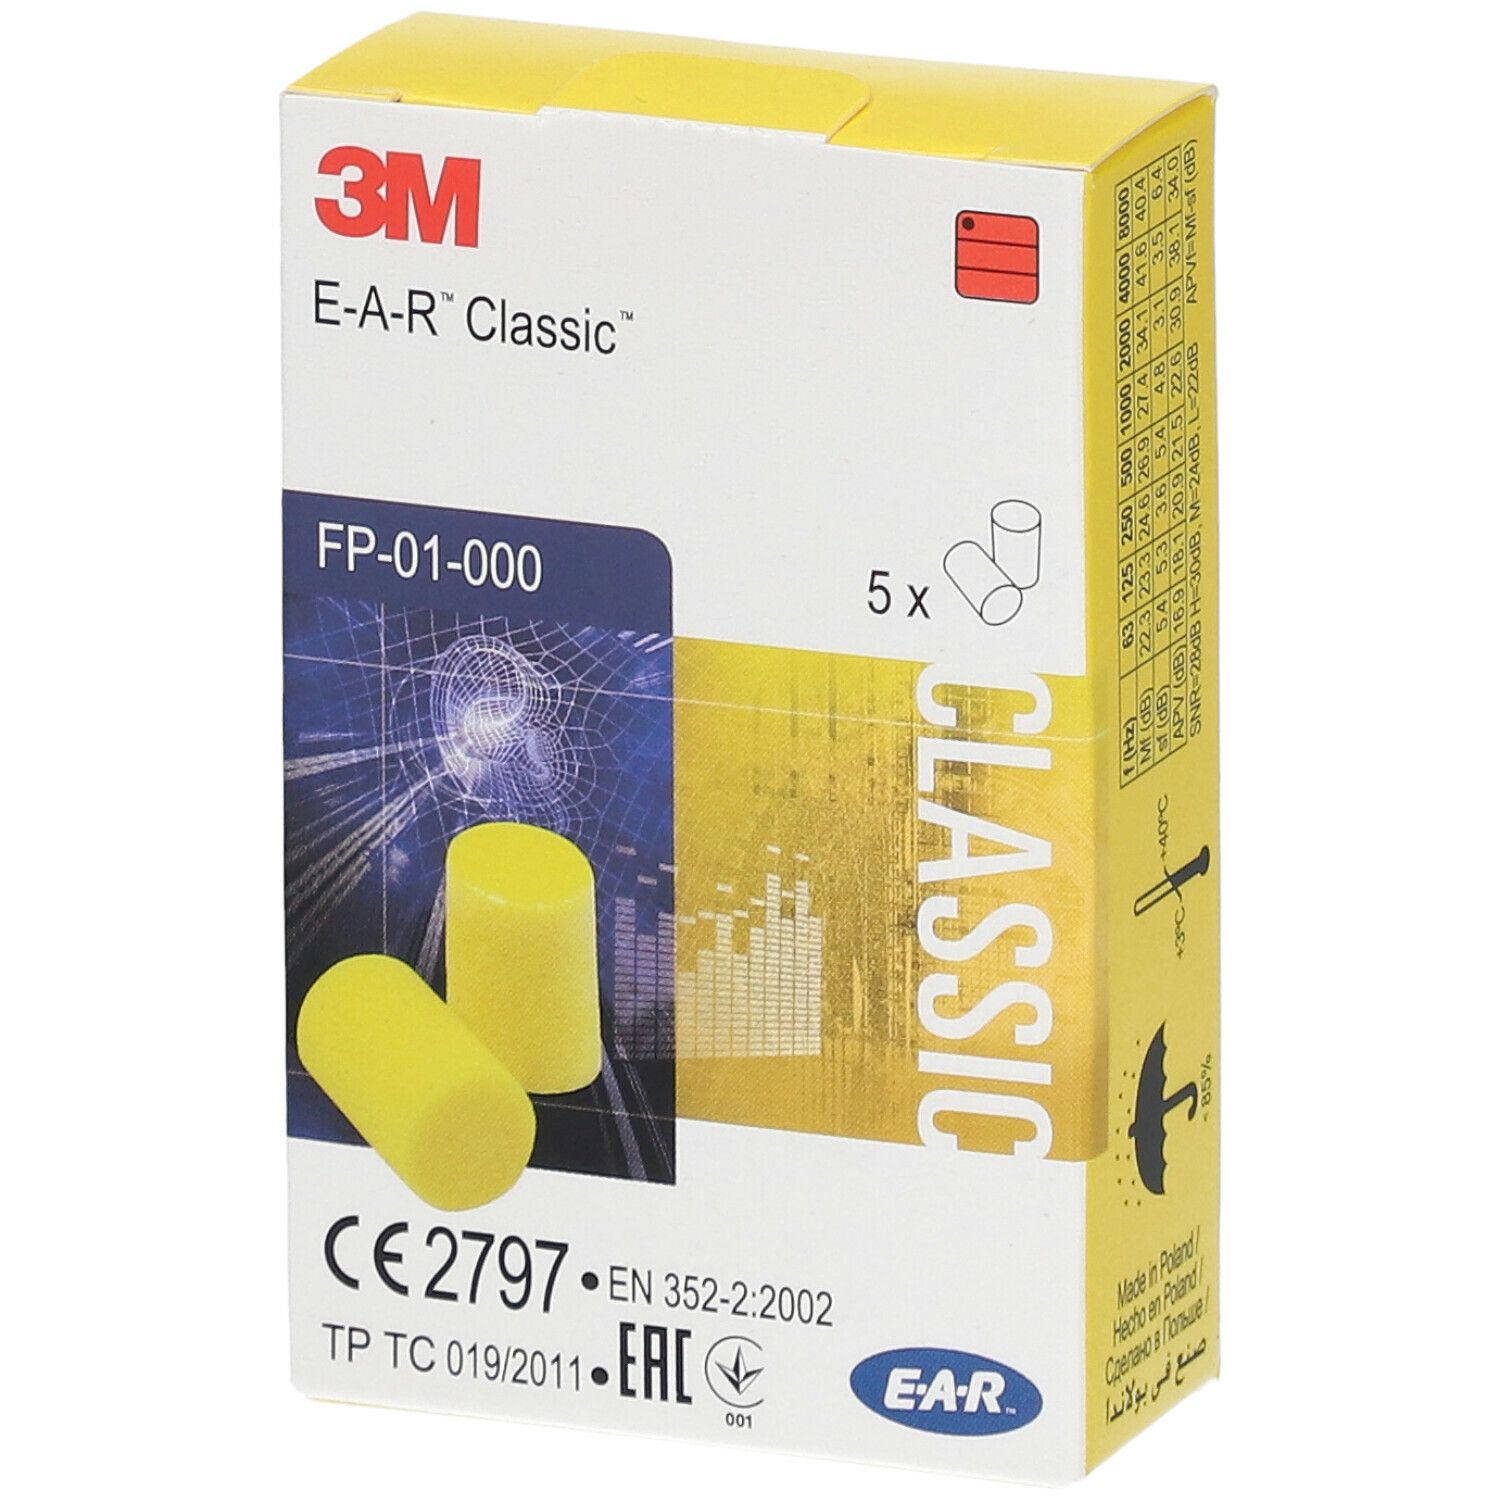 3M™ E-A-R™ Classic™ vorzuformende Gehörschutzstöpsel